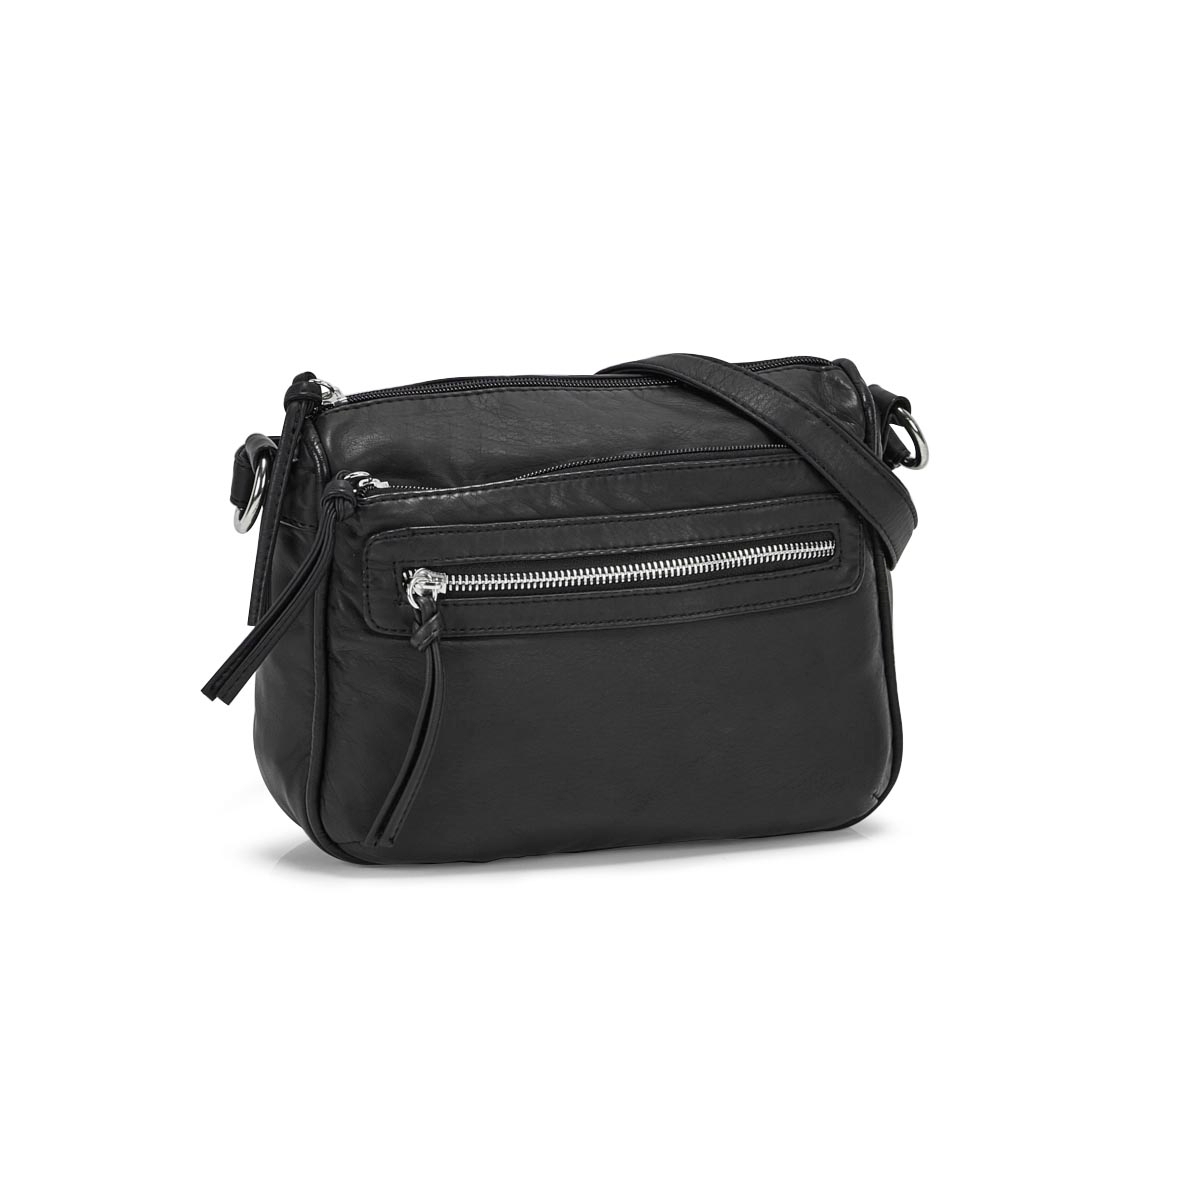 Bueno Handbags Women's B82910 Cross Body Bag | SoftMoc.com